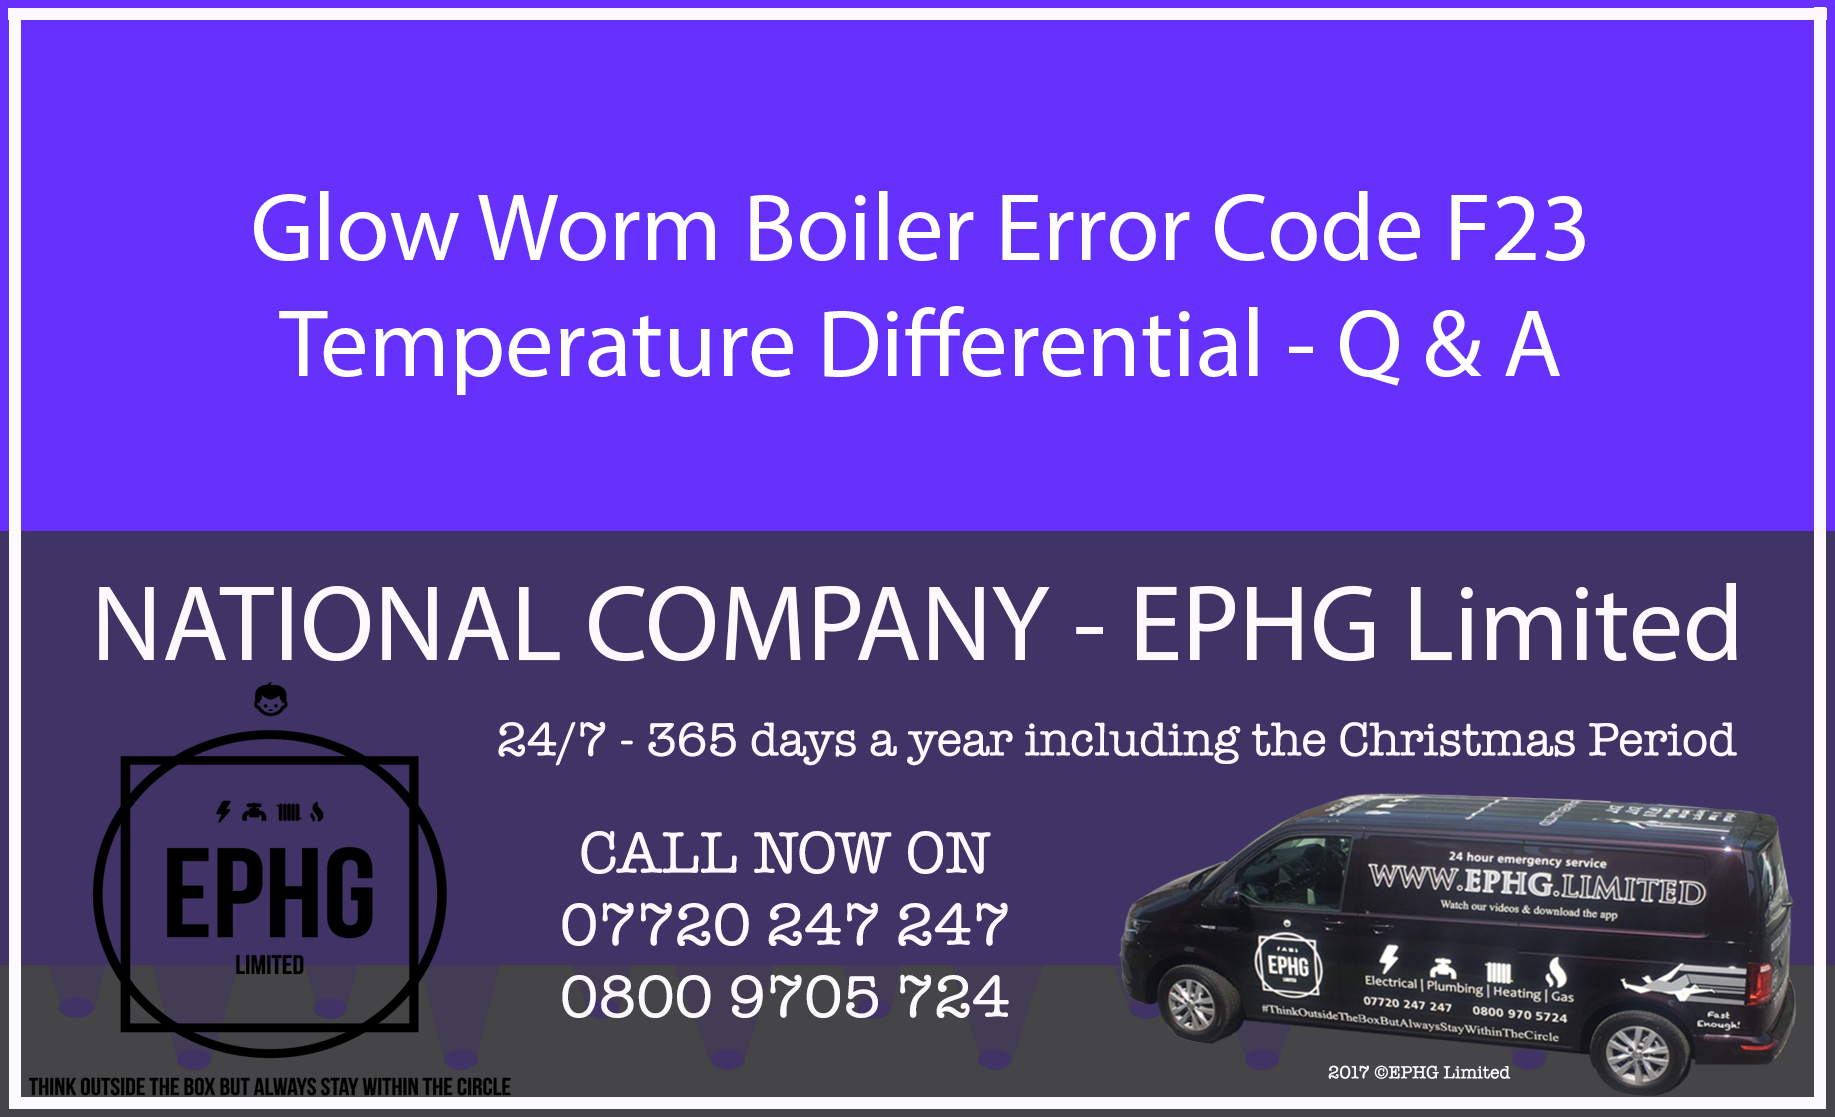 Glow-Worm boiler error code F.23